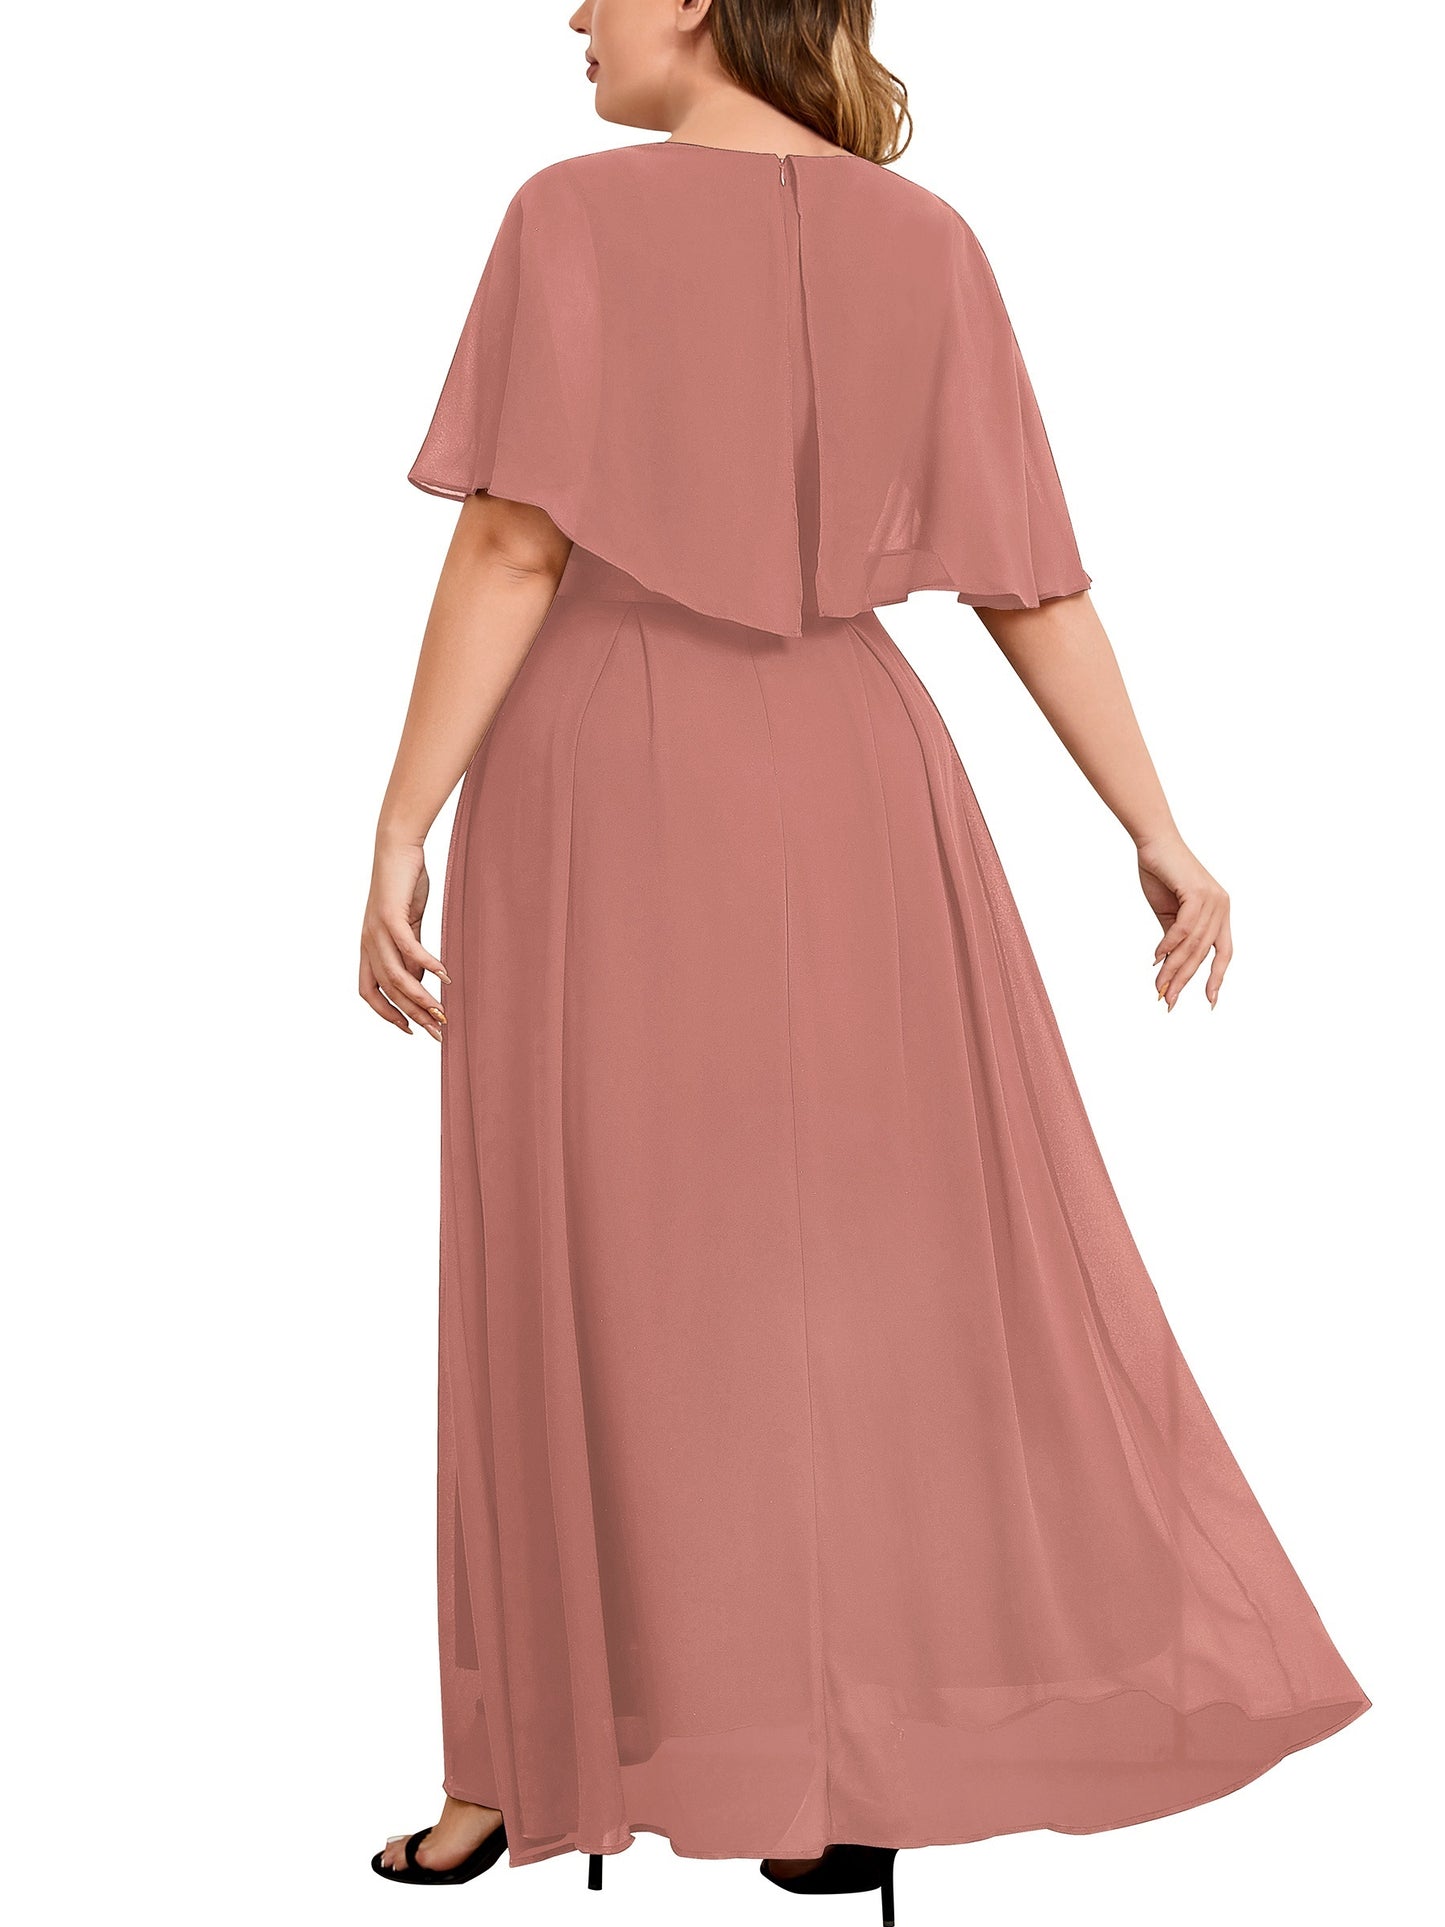 Antmvs Plus Size Elegant Bridesmaid Dress, Women's Plus Contrast Lace Cape Sleeve V Neck Flowy Formal Evening Dress